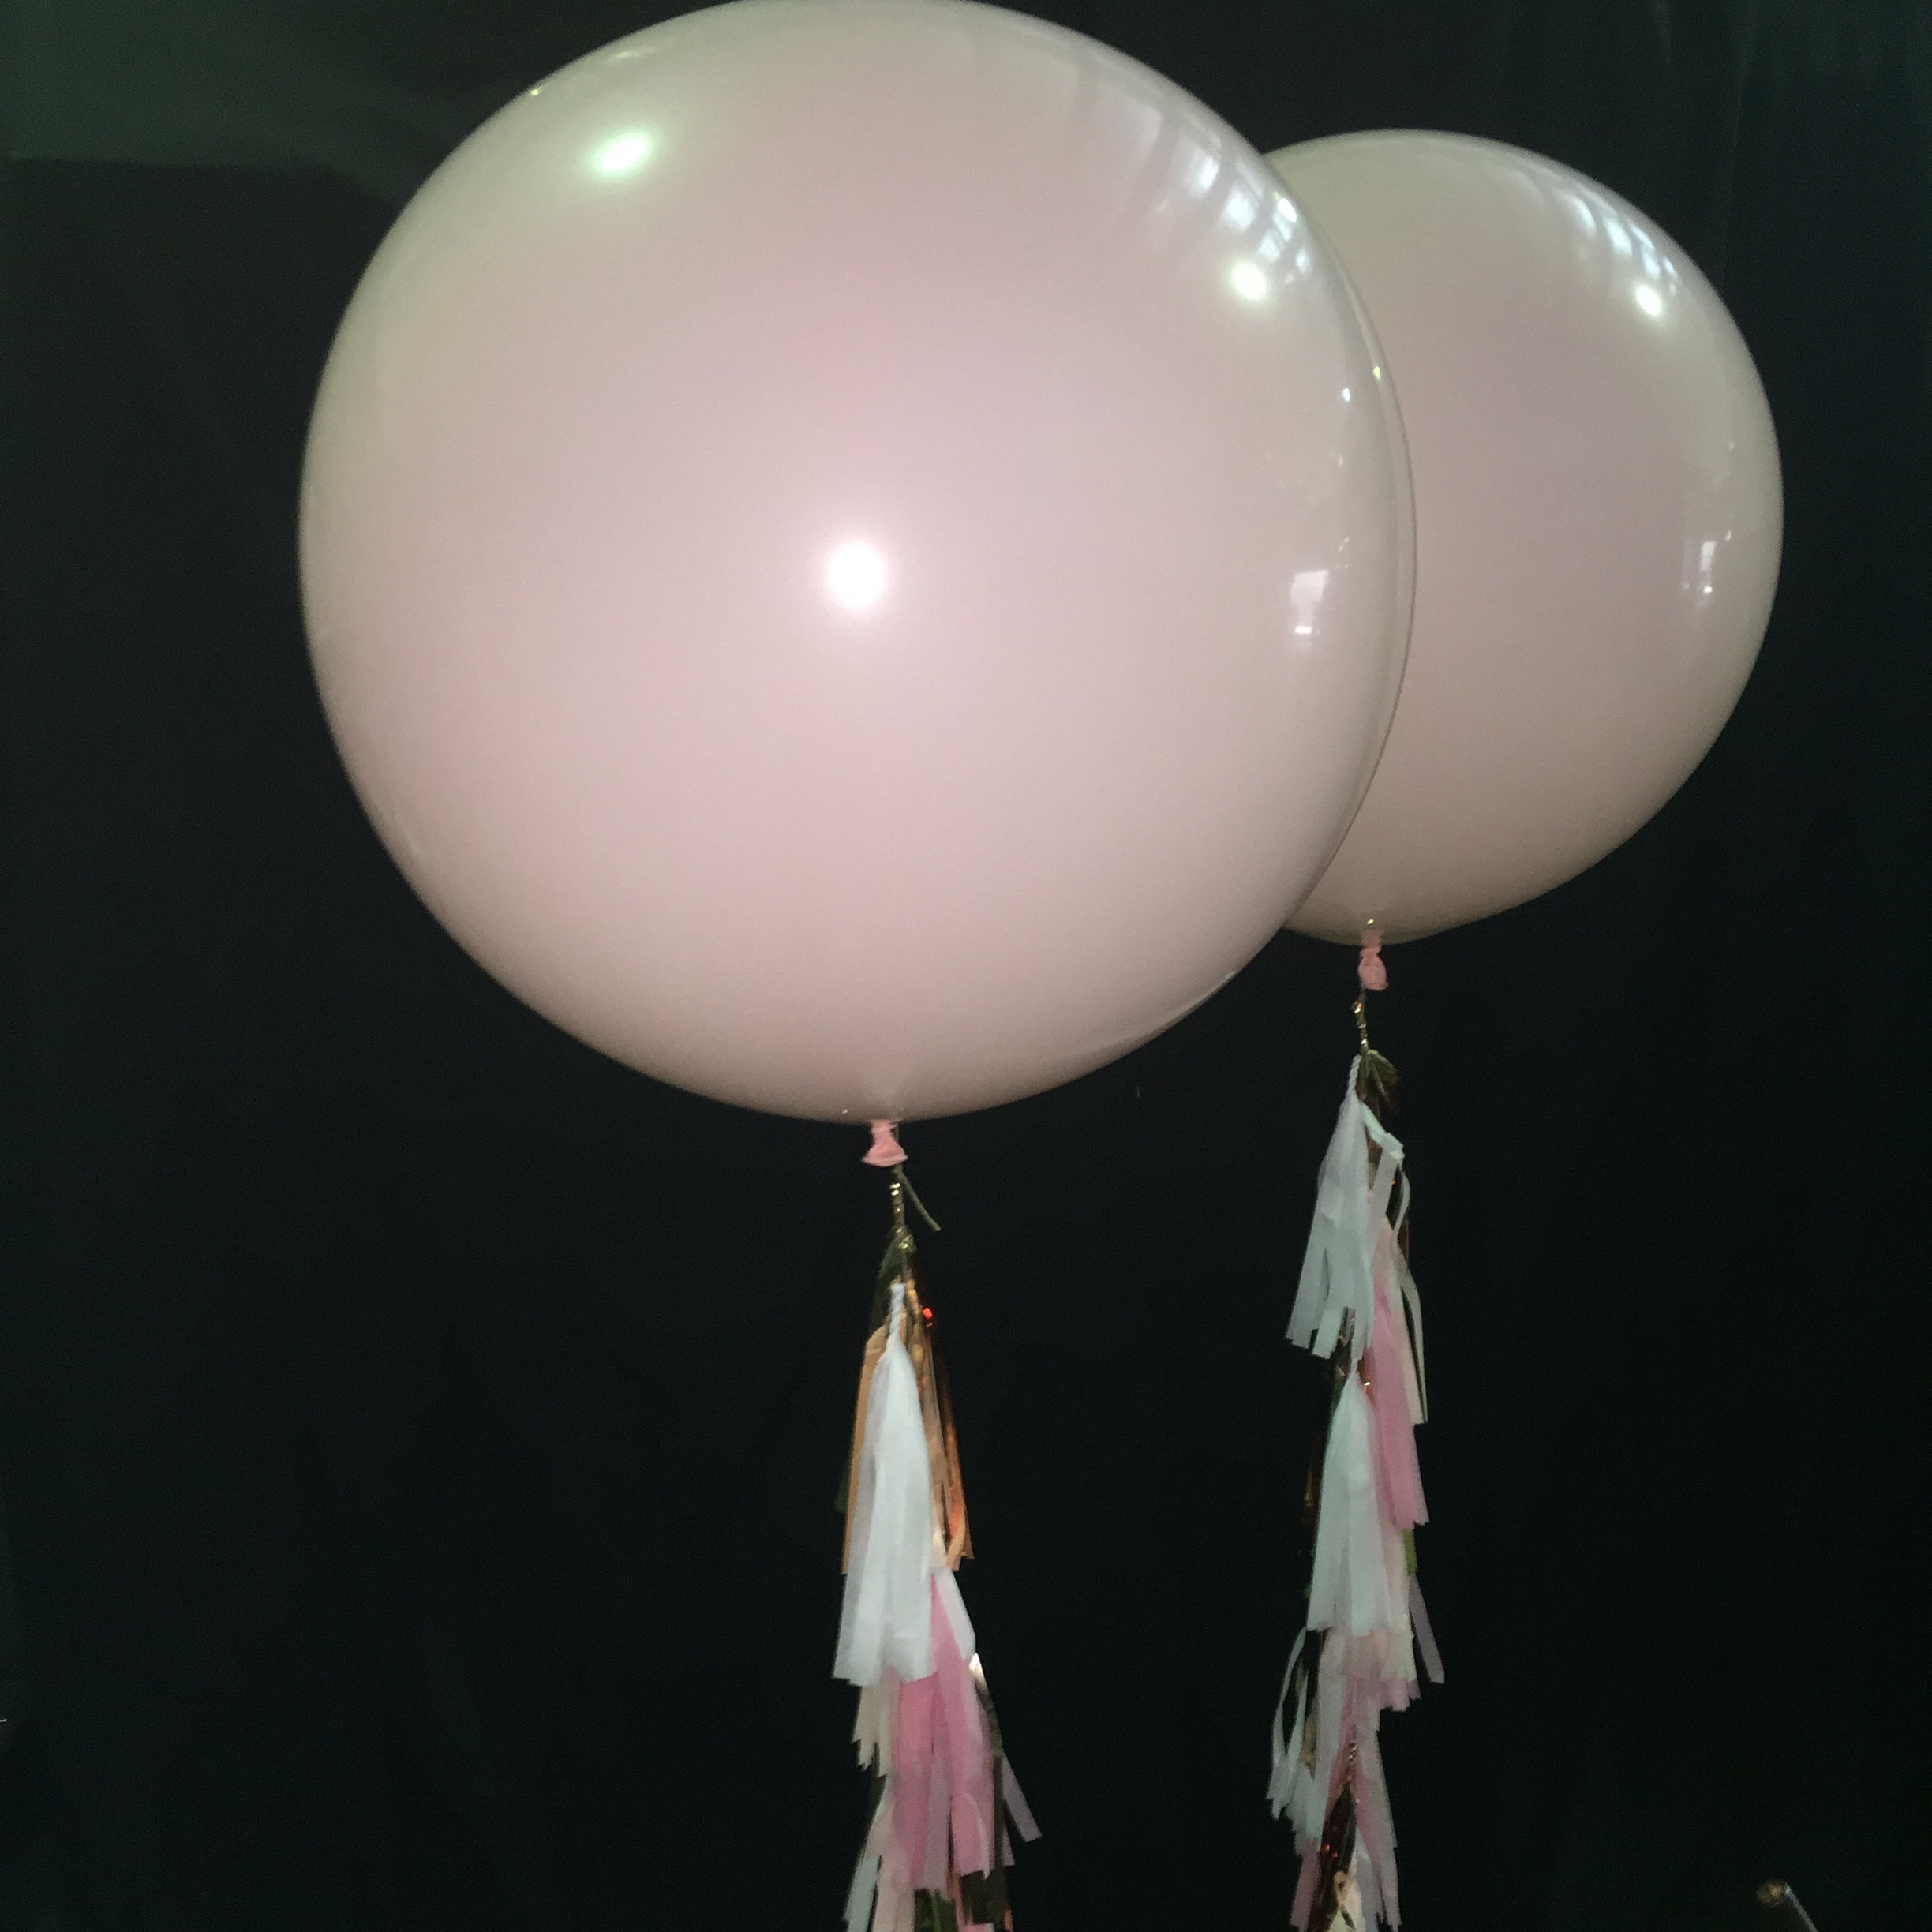 Giant Balloons, Confetti Balloons, Tulle Balloons